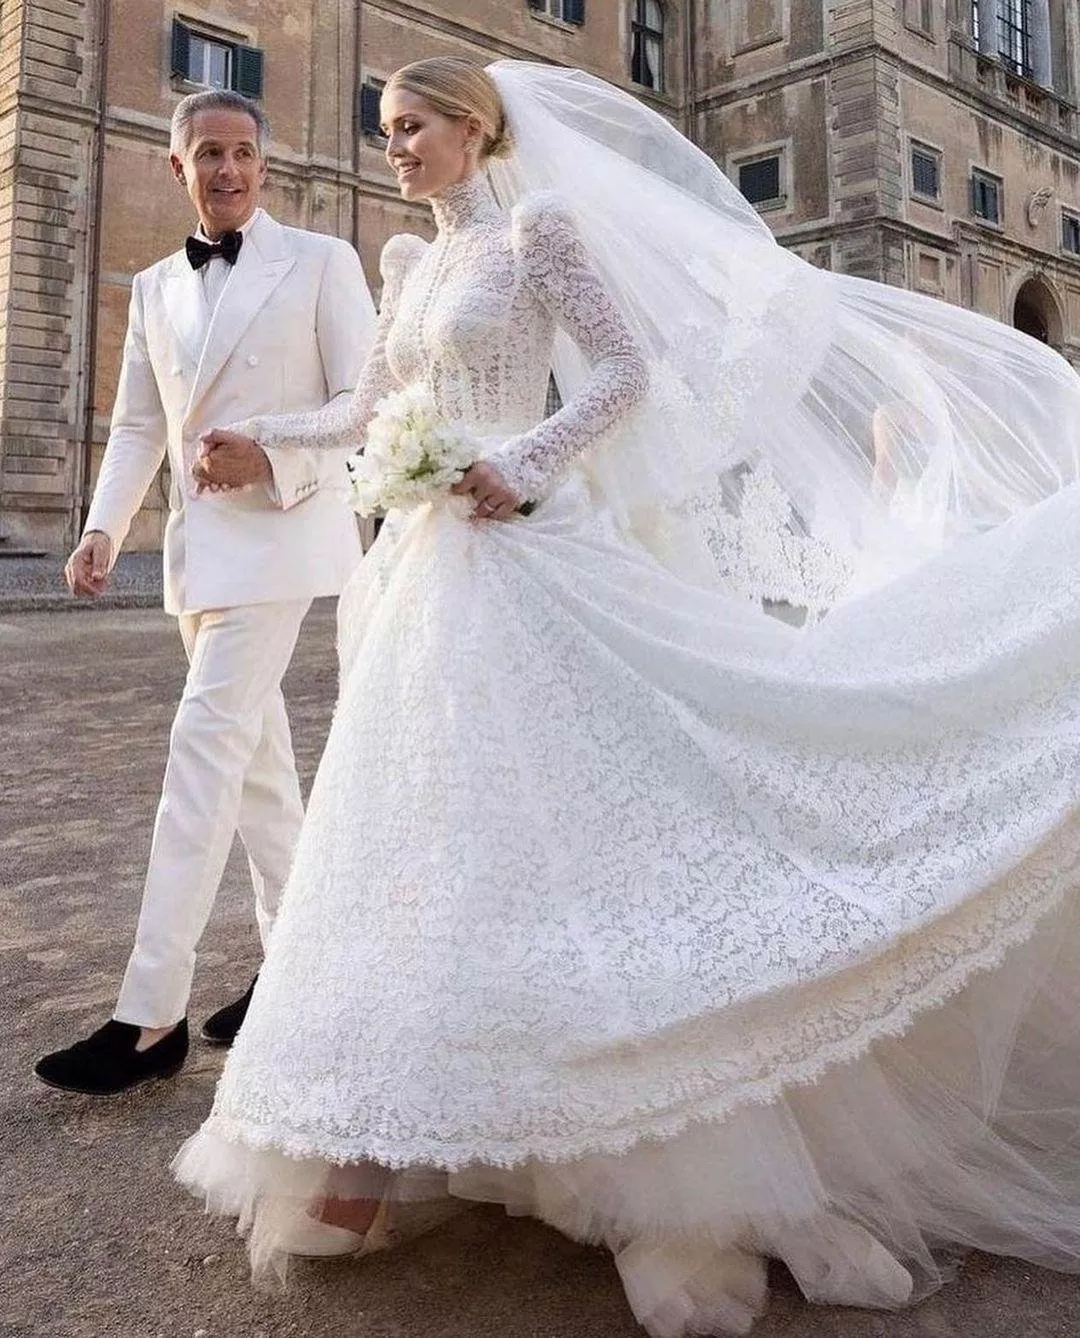 ليدي كيتي سبنسر تسحر الجميع في يوم زفافها بإطلالات ملكية فخمة